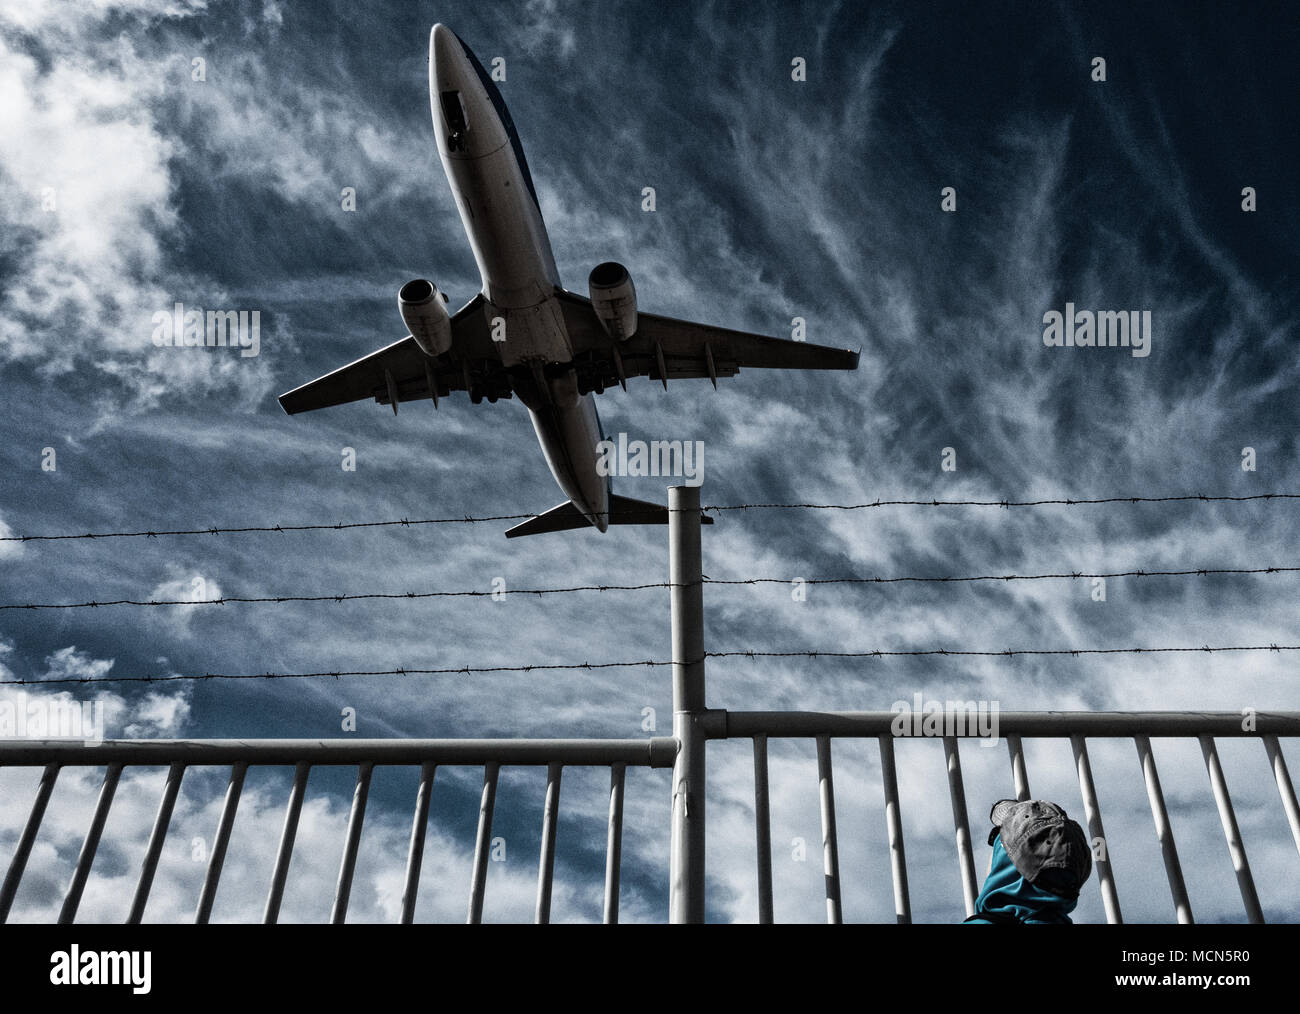 Frau, die Flugzeuge/Flugzeuge von hinter Stacheldraht-Perimeter, Grenzzaun beobachtet. Konzeptbild: Russland Ukraine-Konflikt, keine Flugzone, Flüchtlingskrise. Stockfoto